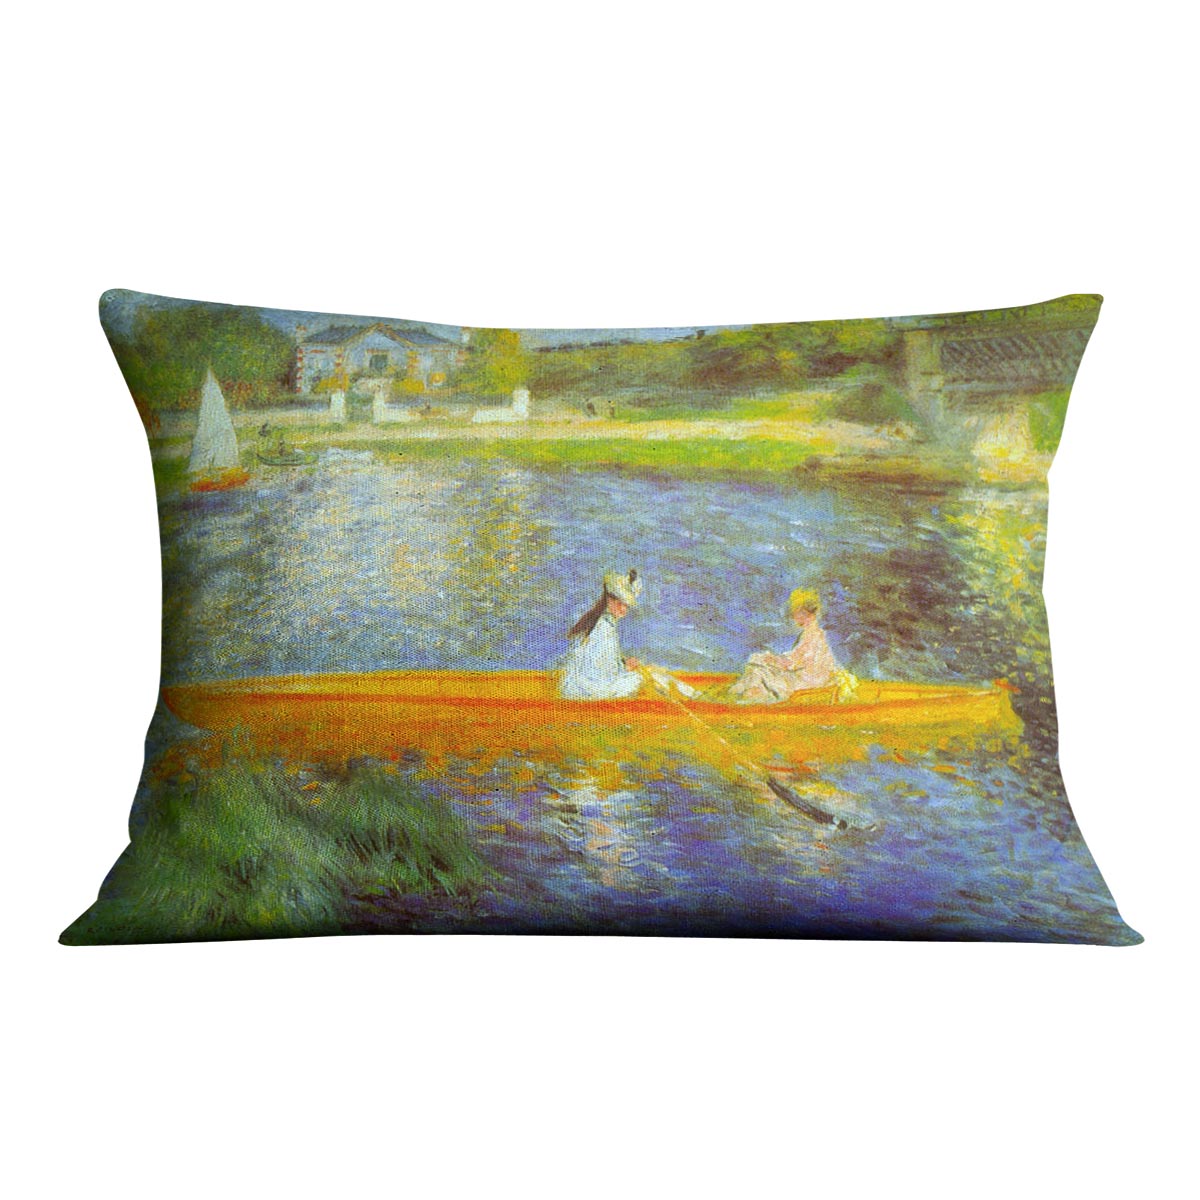 The Seine by Renoir Cushion